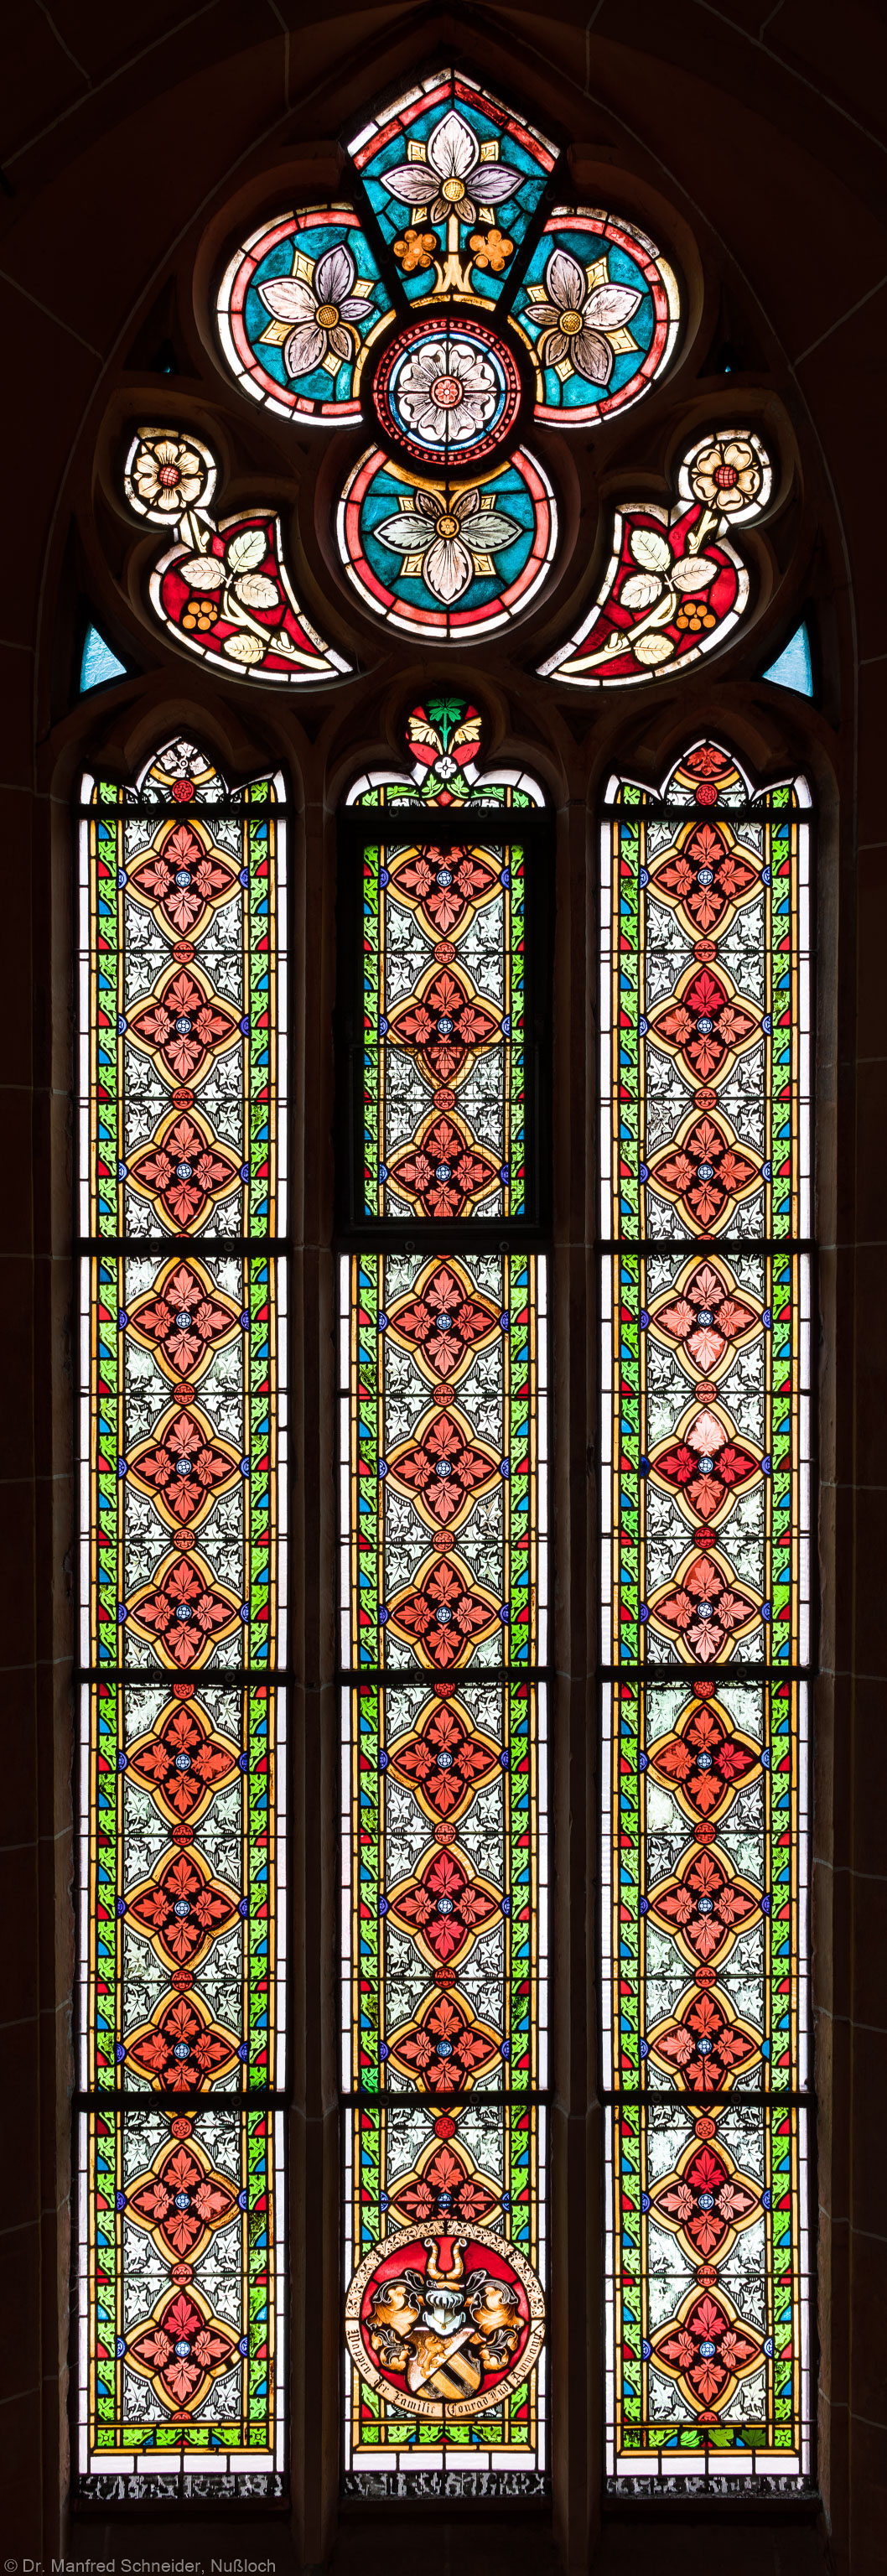 Heidelberg - Heiliggeistkirche - Südschiff - 3. Joch, von Westen aus gezählt - Gesamtaufnahme des Ornamentfensters (aufgenommen im Oktober 2015, am Nachmittag)